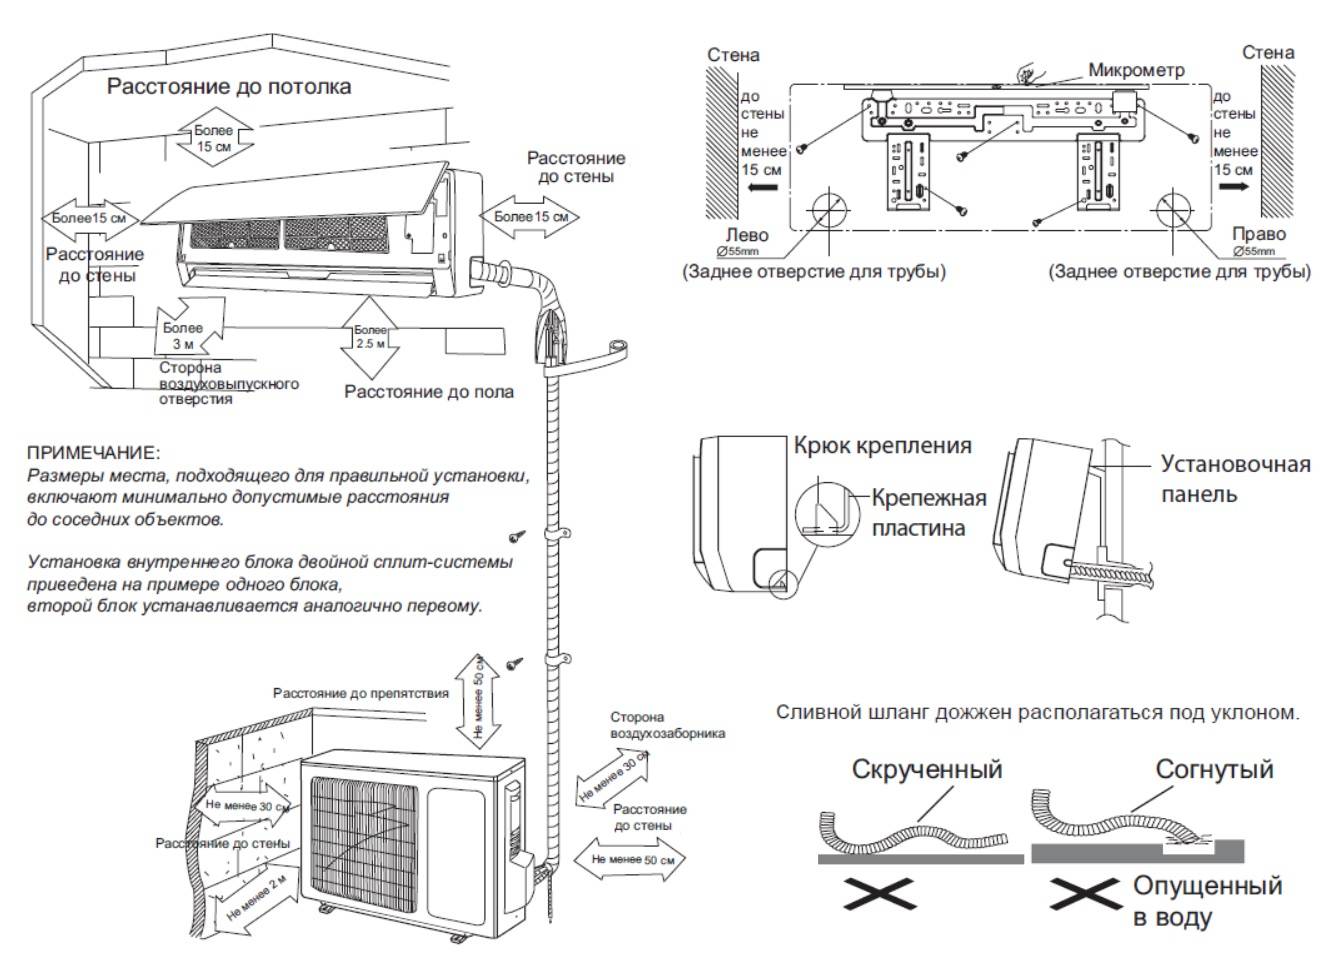 Подключение кондиционера: схемы монтажа оборудования, как правильно подсоединить сплит-систему к электросети